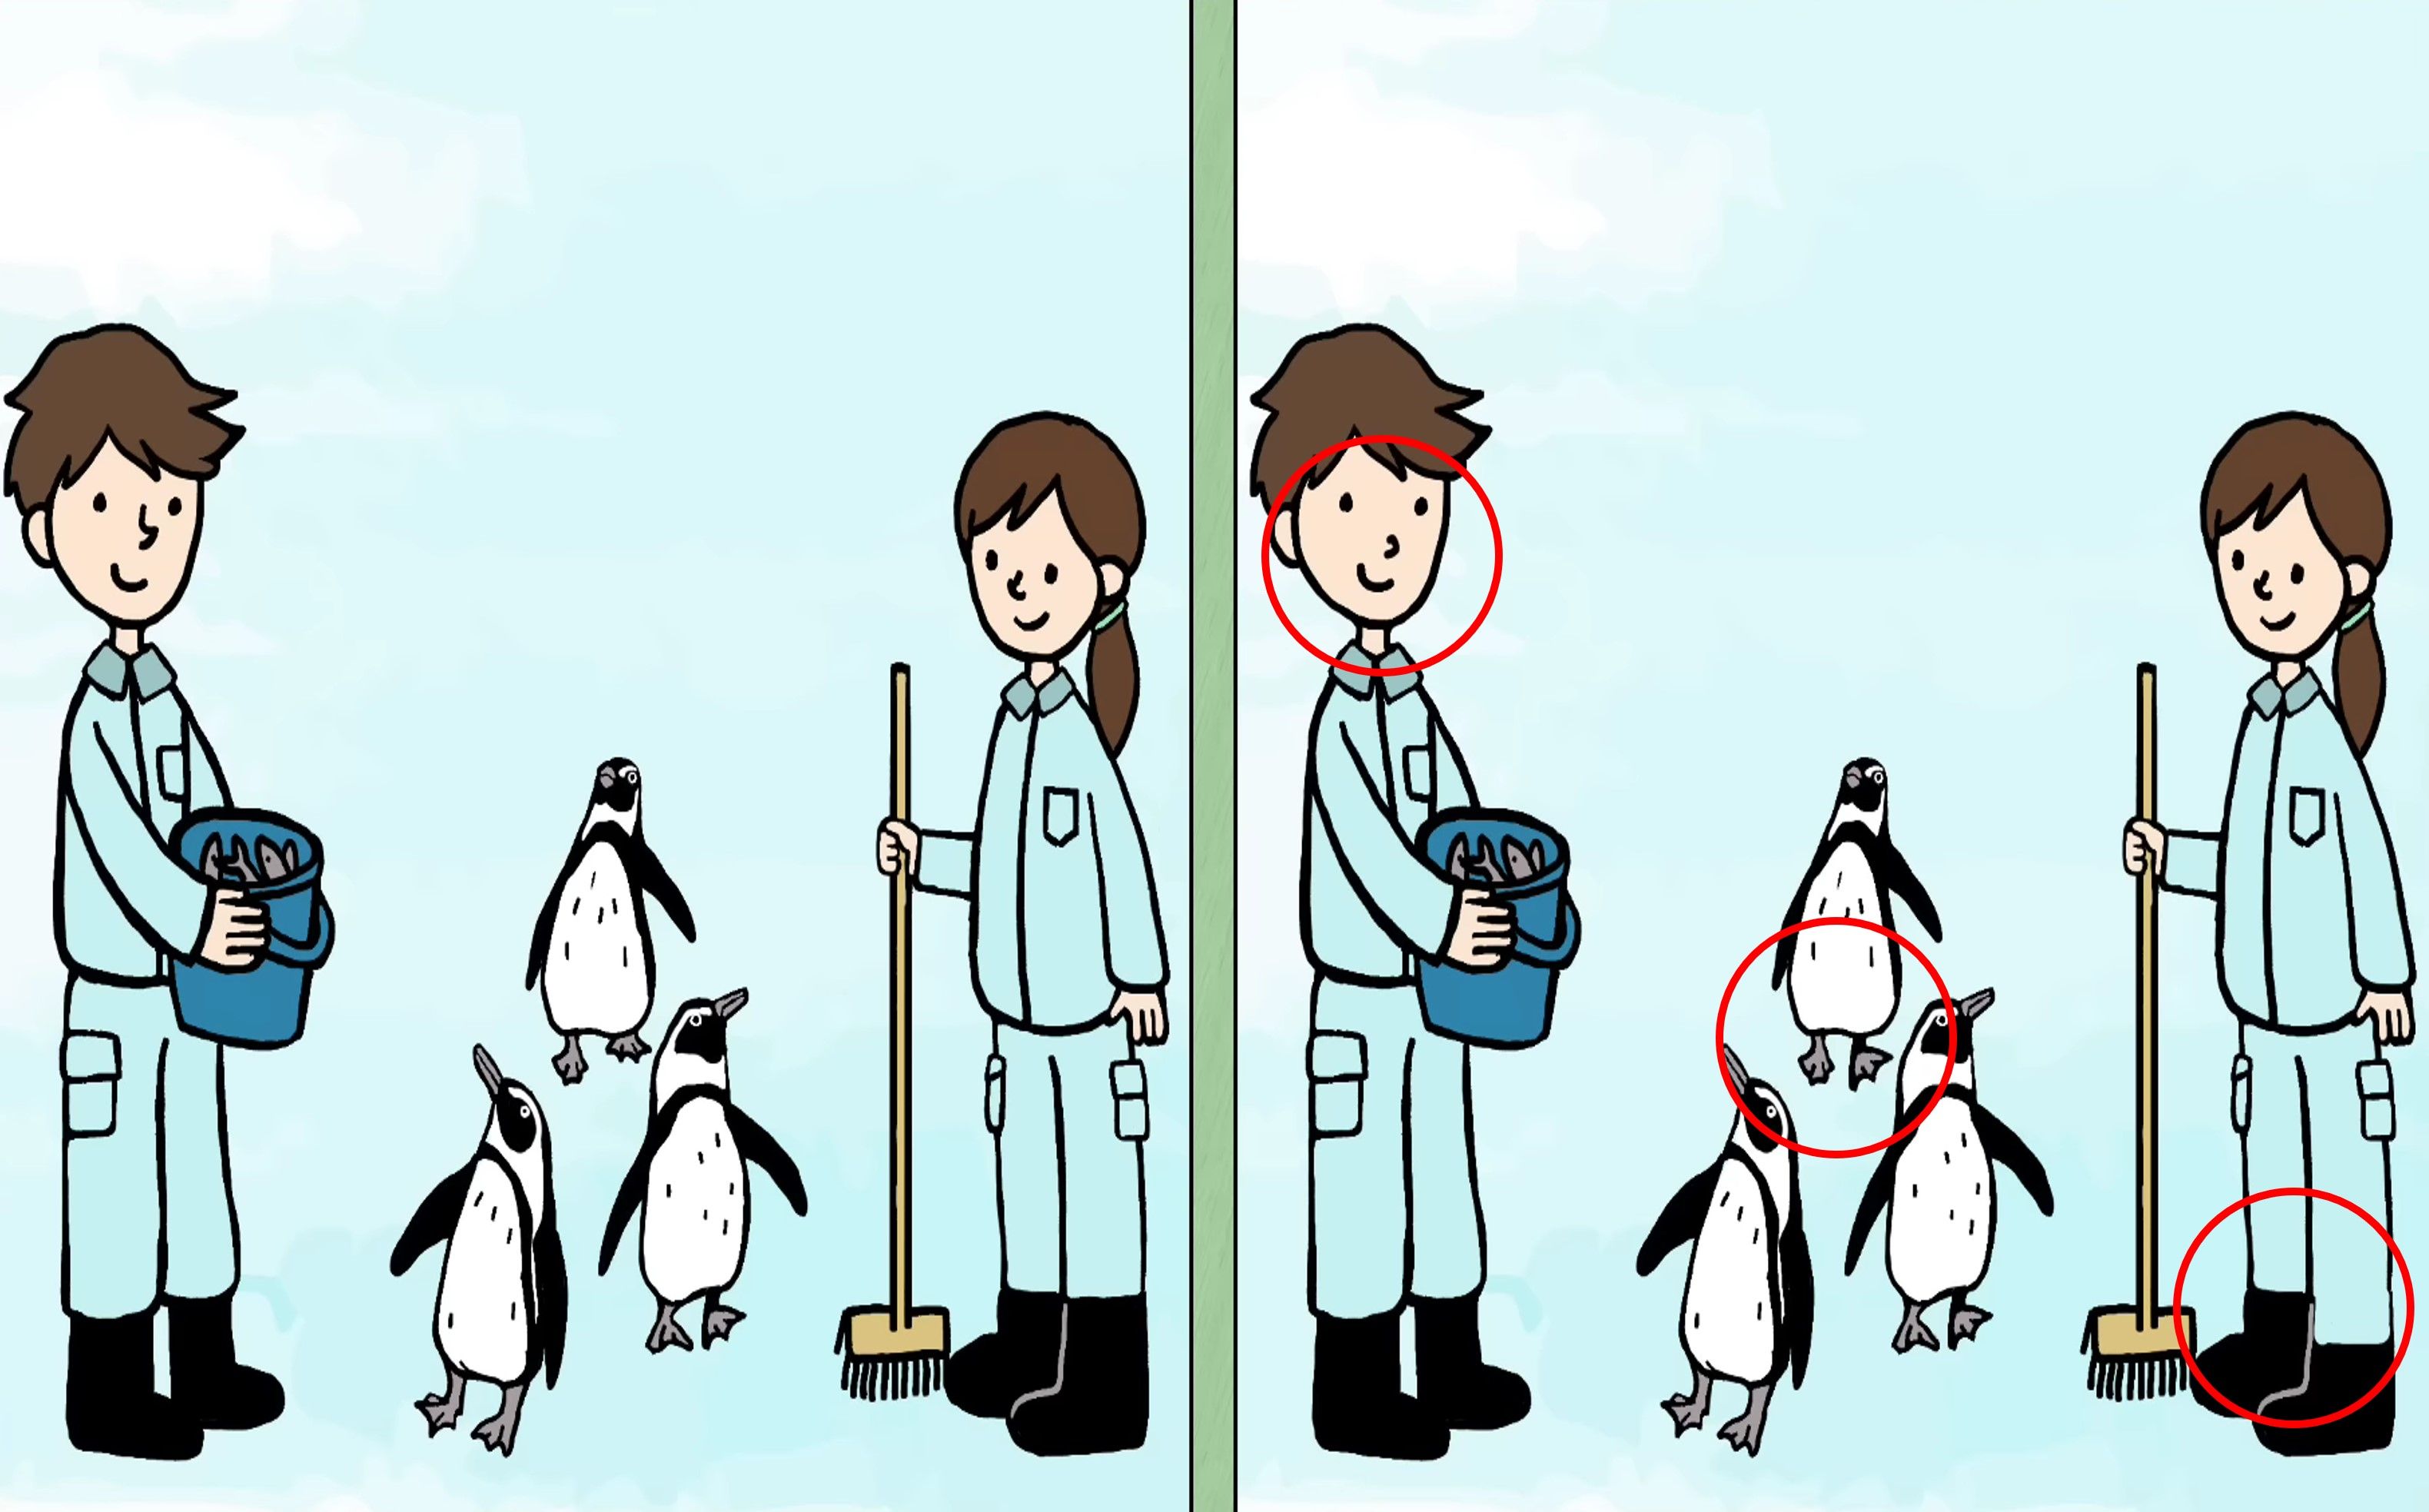 Letak tiga perbedaan pada gambar penguin dan pawangnya ini.*